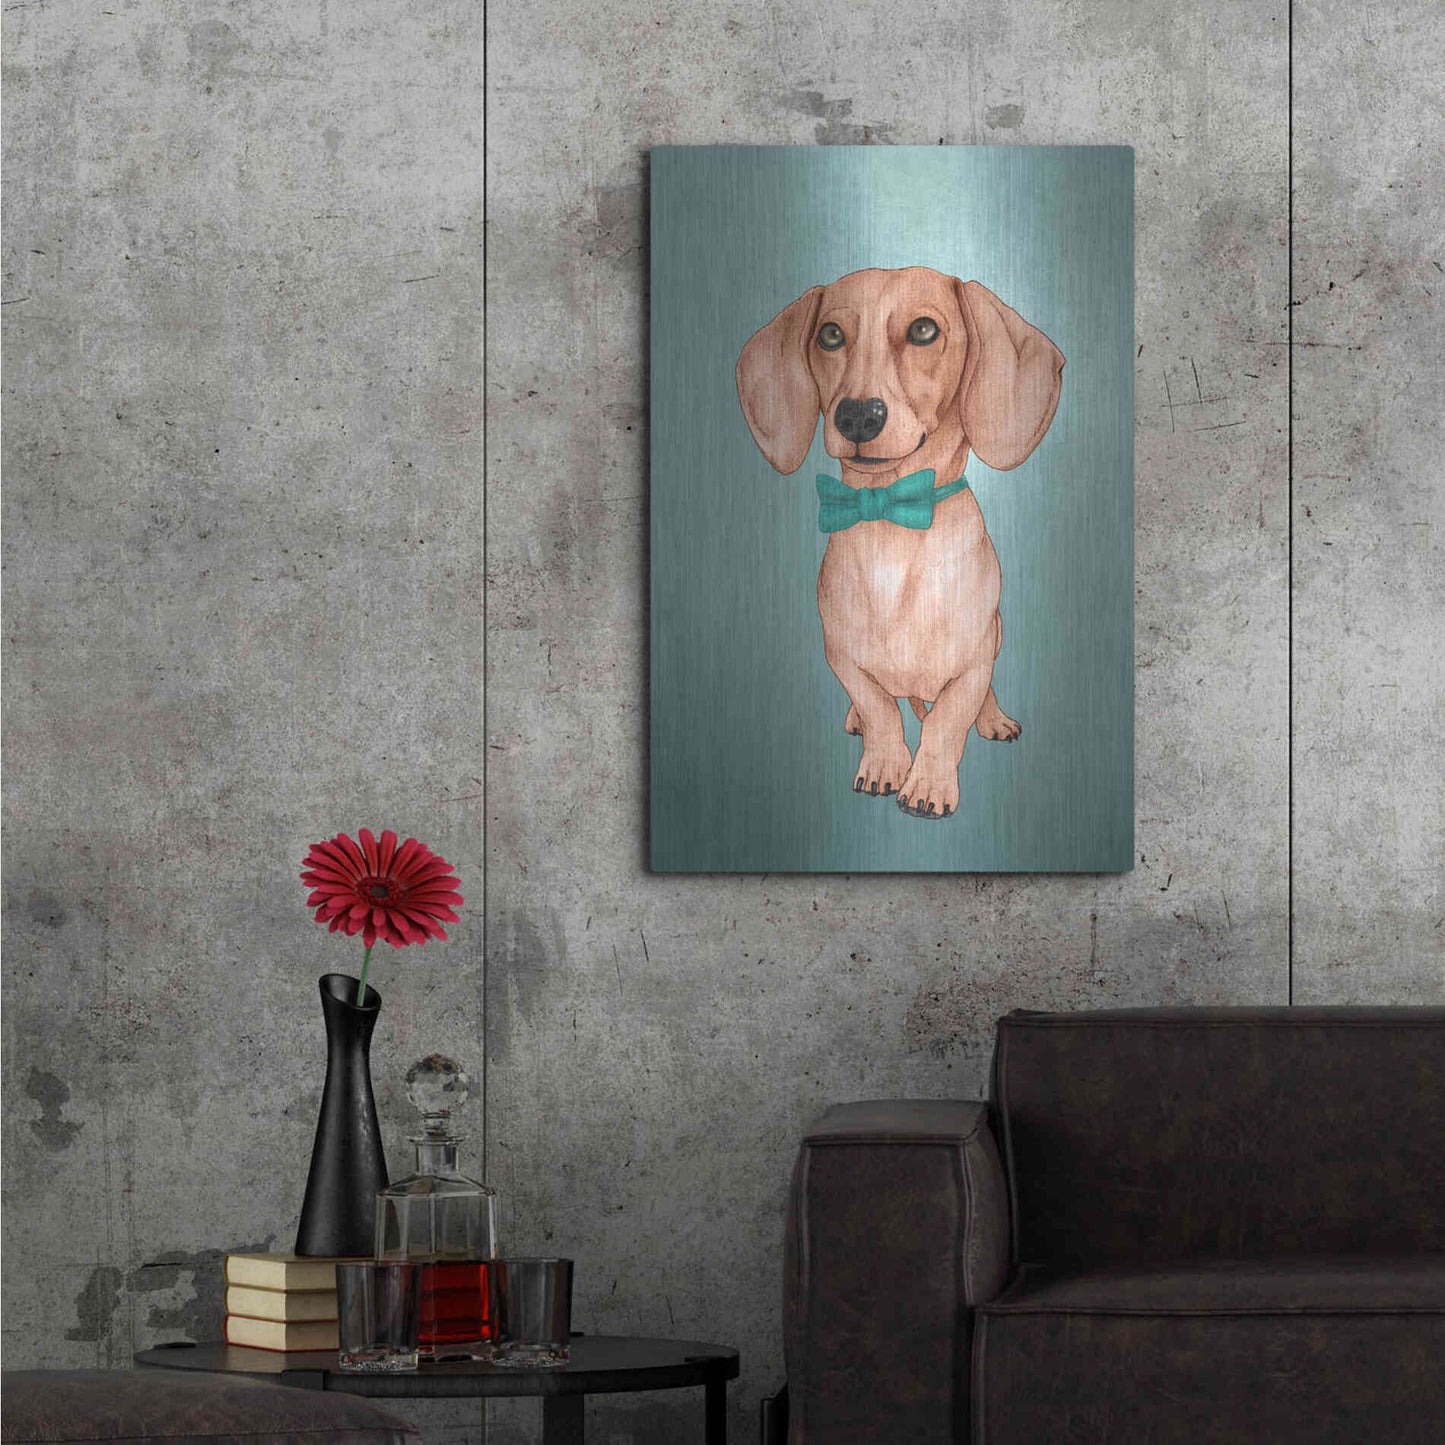 Luxe Metal Art 'The Wiener Dog' by Barruf Metal Wall Art,24x36